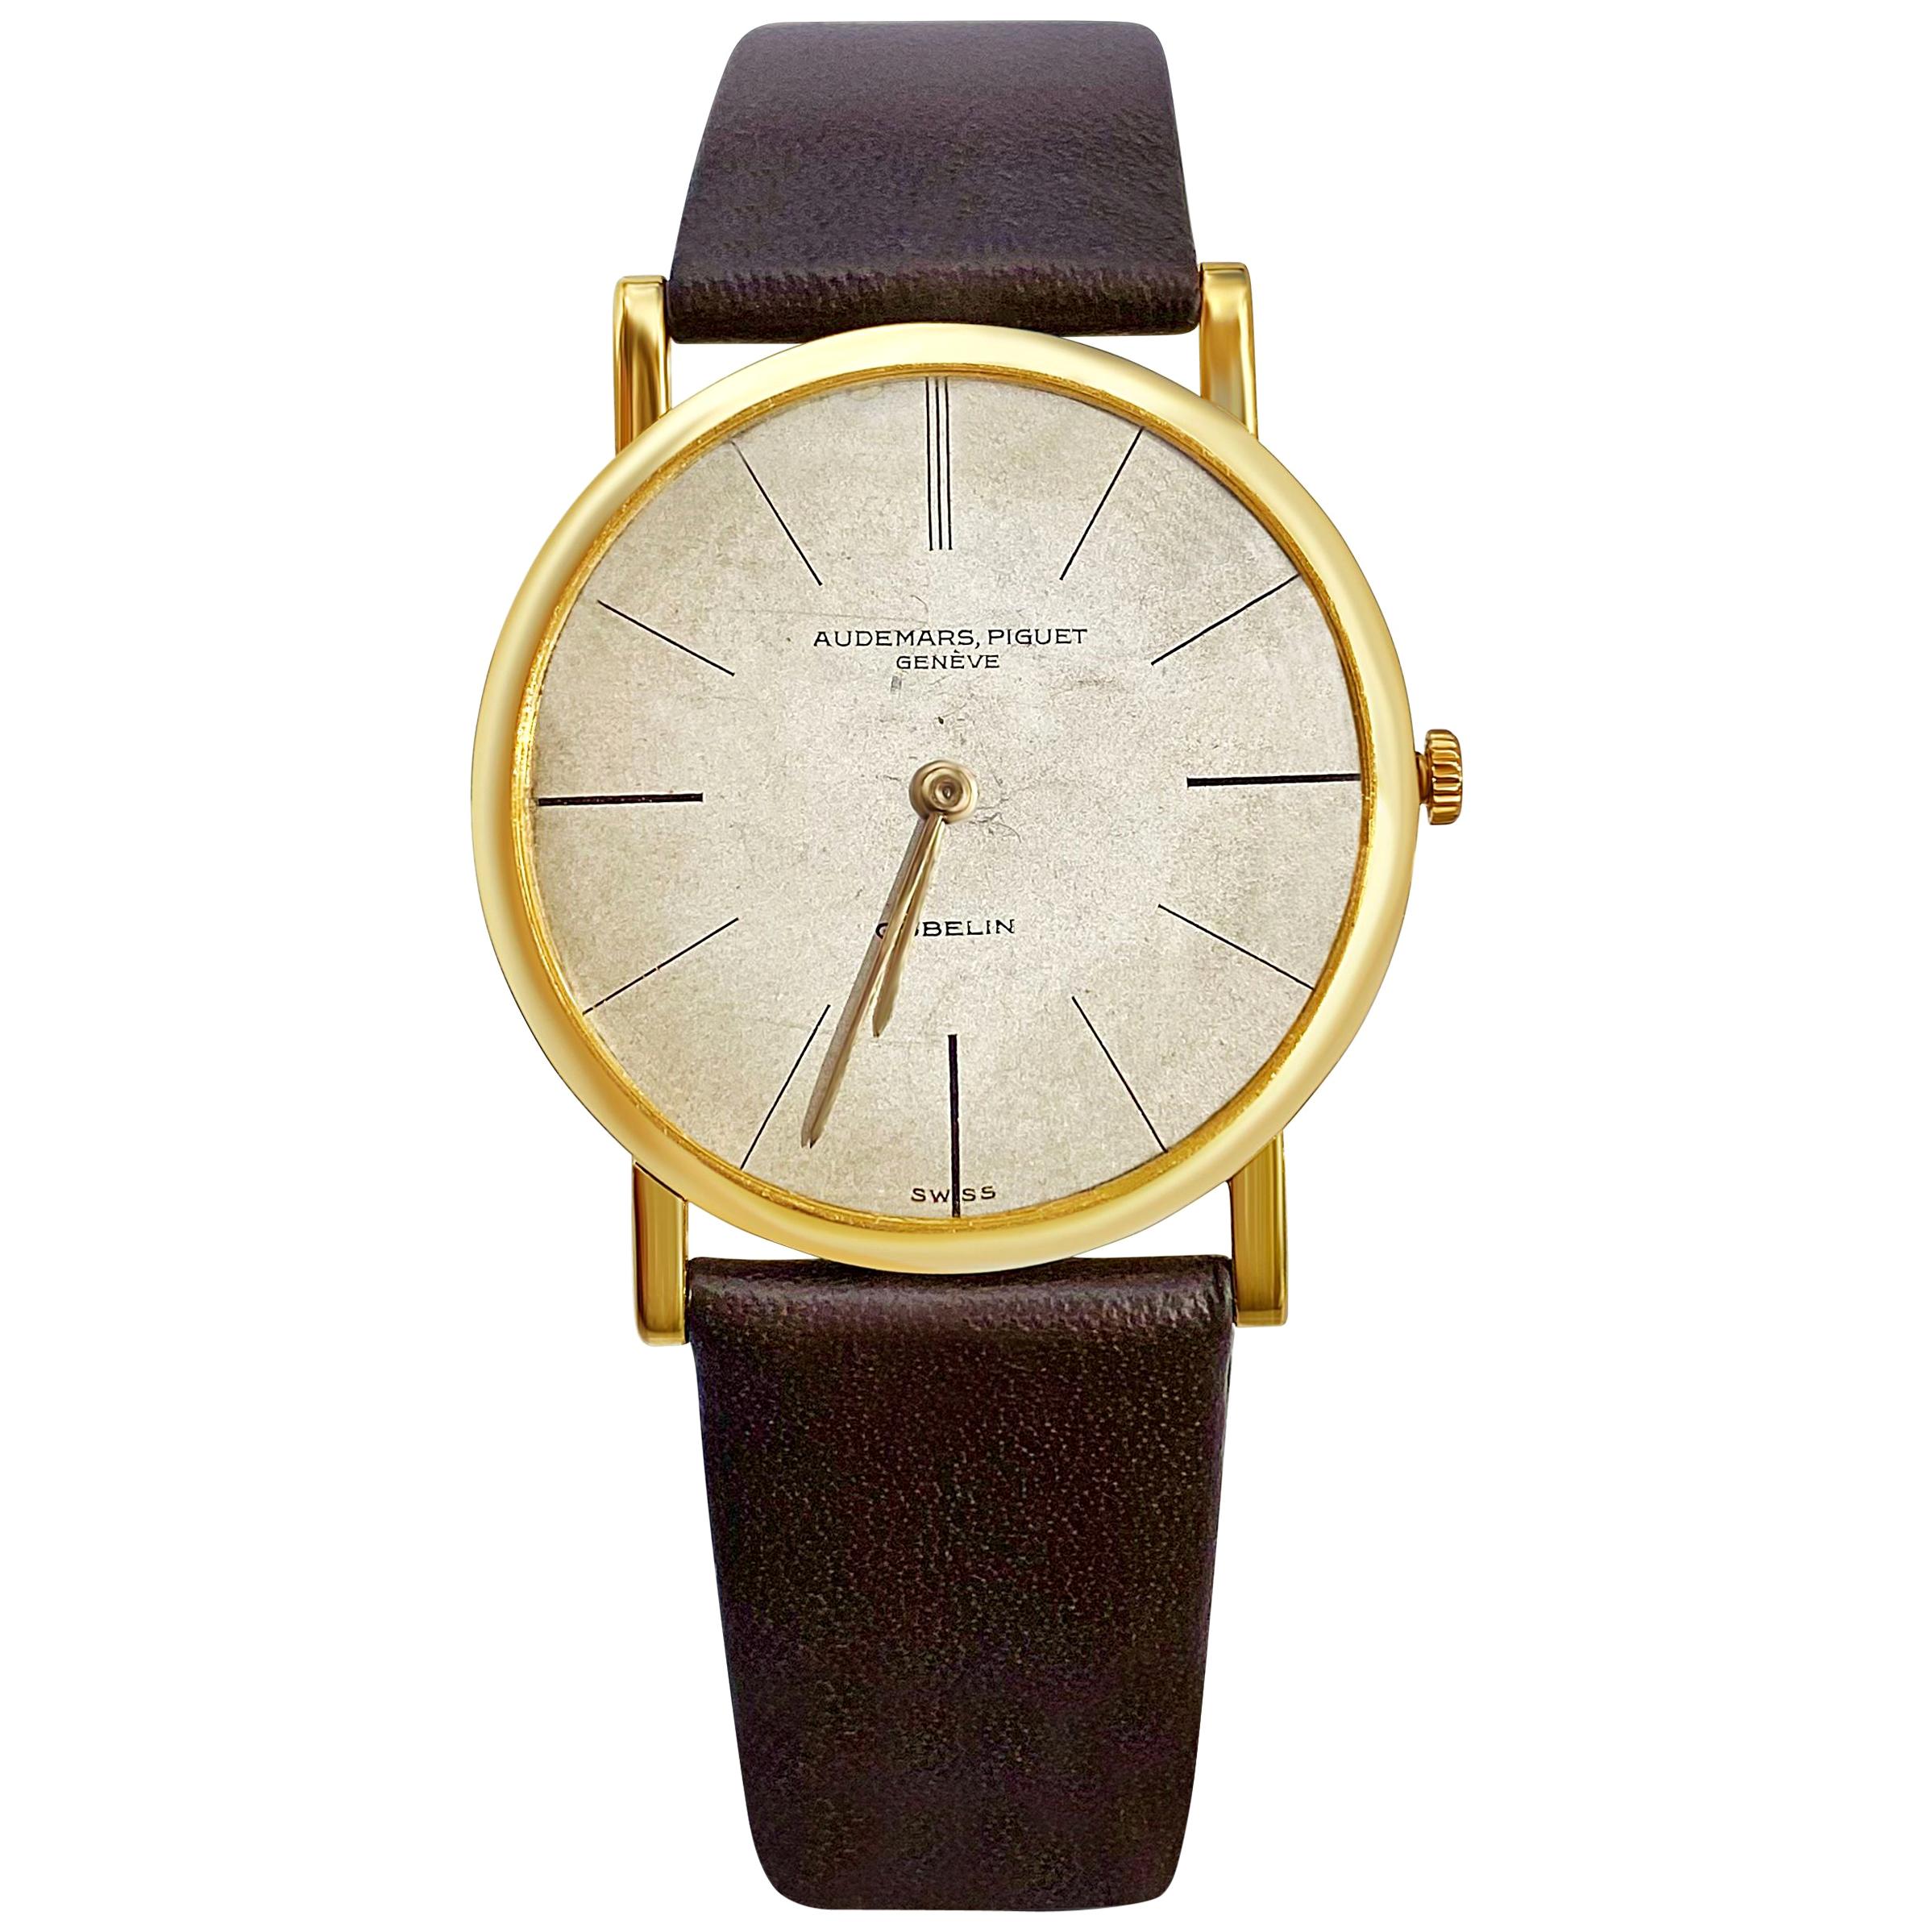 1956 AP Audemars Piguet "Calibre K2071" 18 Karat Gold Men’s Leather Strap Watch